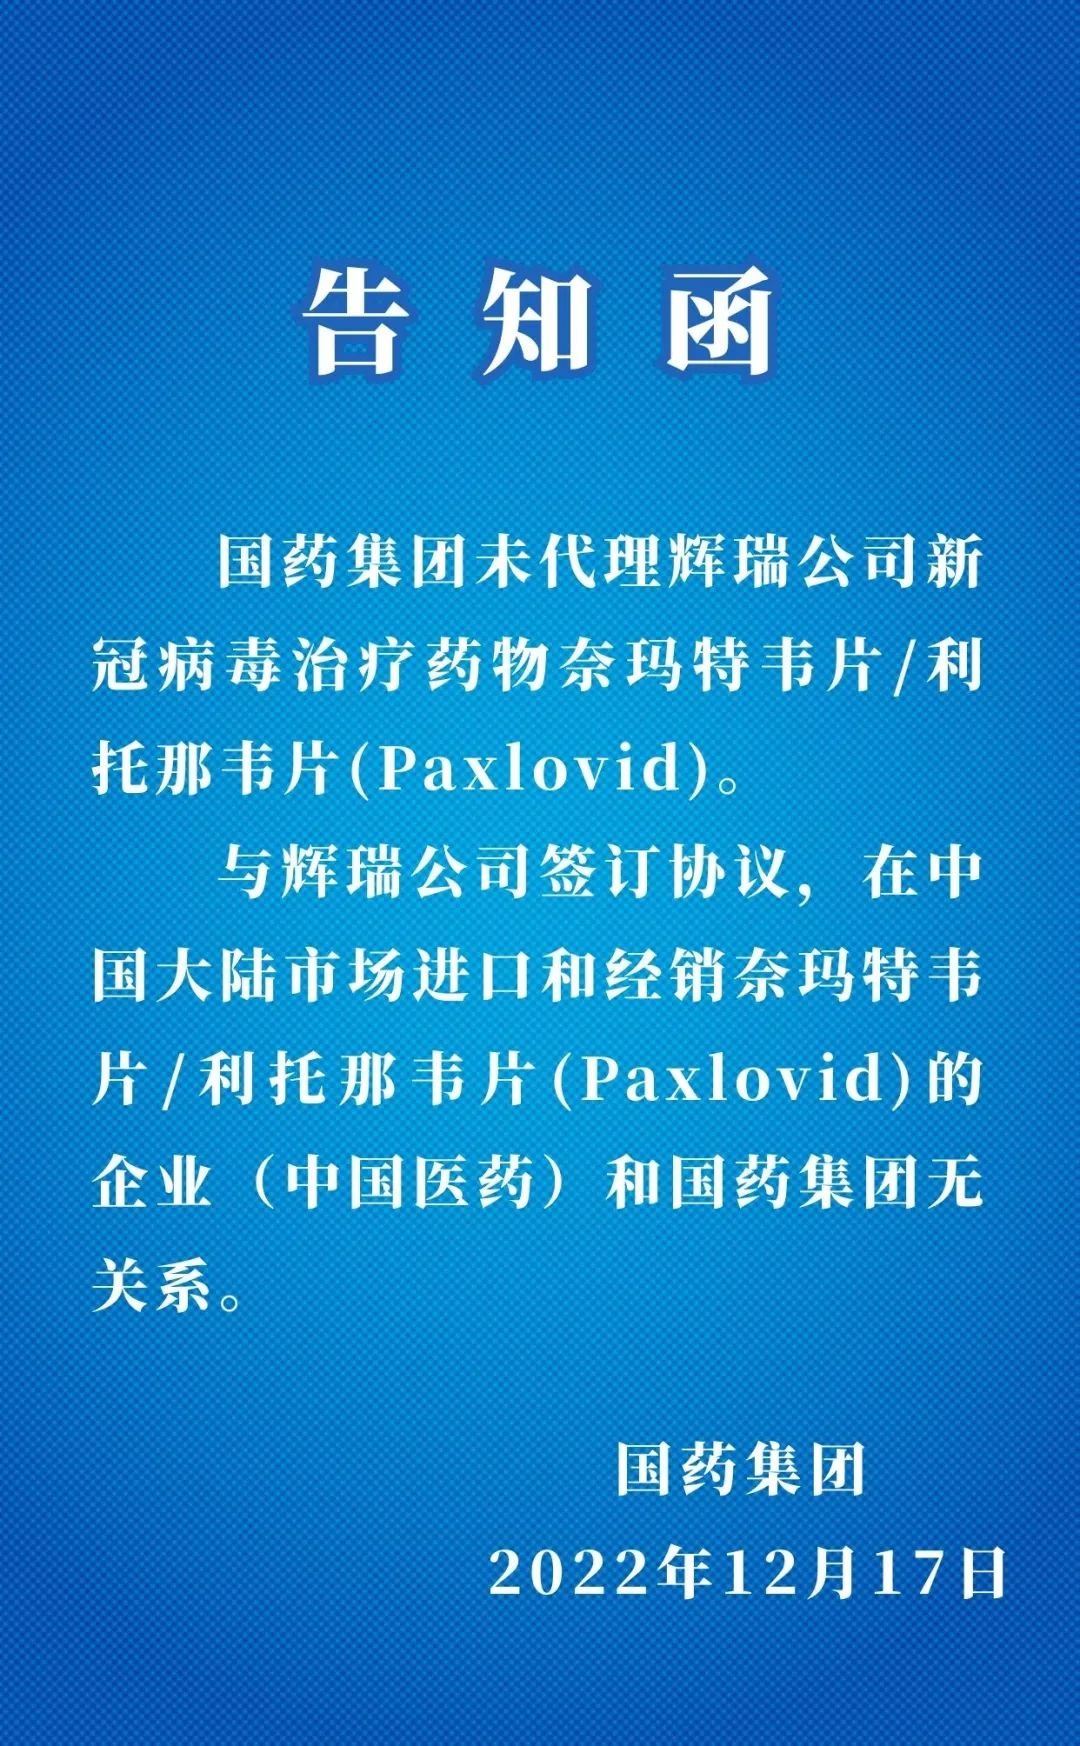 北京严查无牌电动自行车 对违规车主最高罚1000元